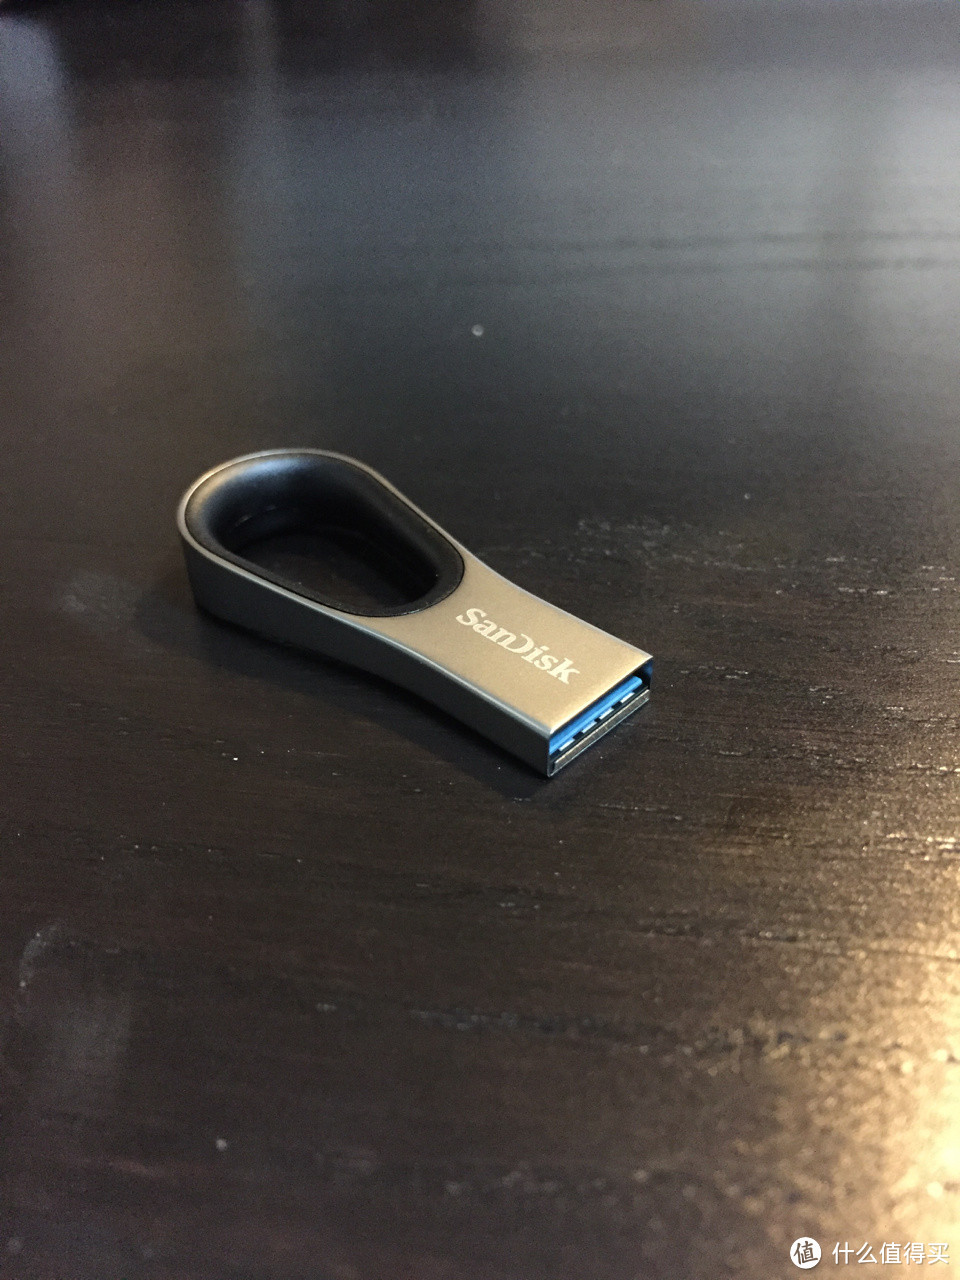 这货不是无叶风扇：SanDisk 闪迪 32G USB 3.0 for Apple 闪存盘